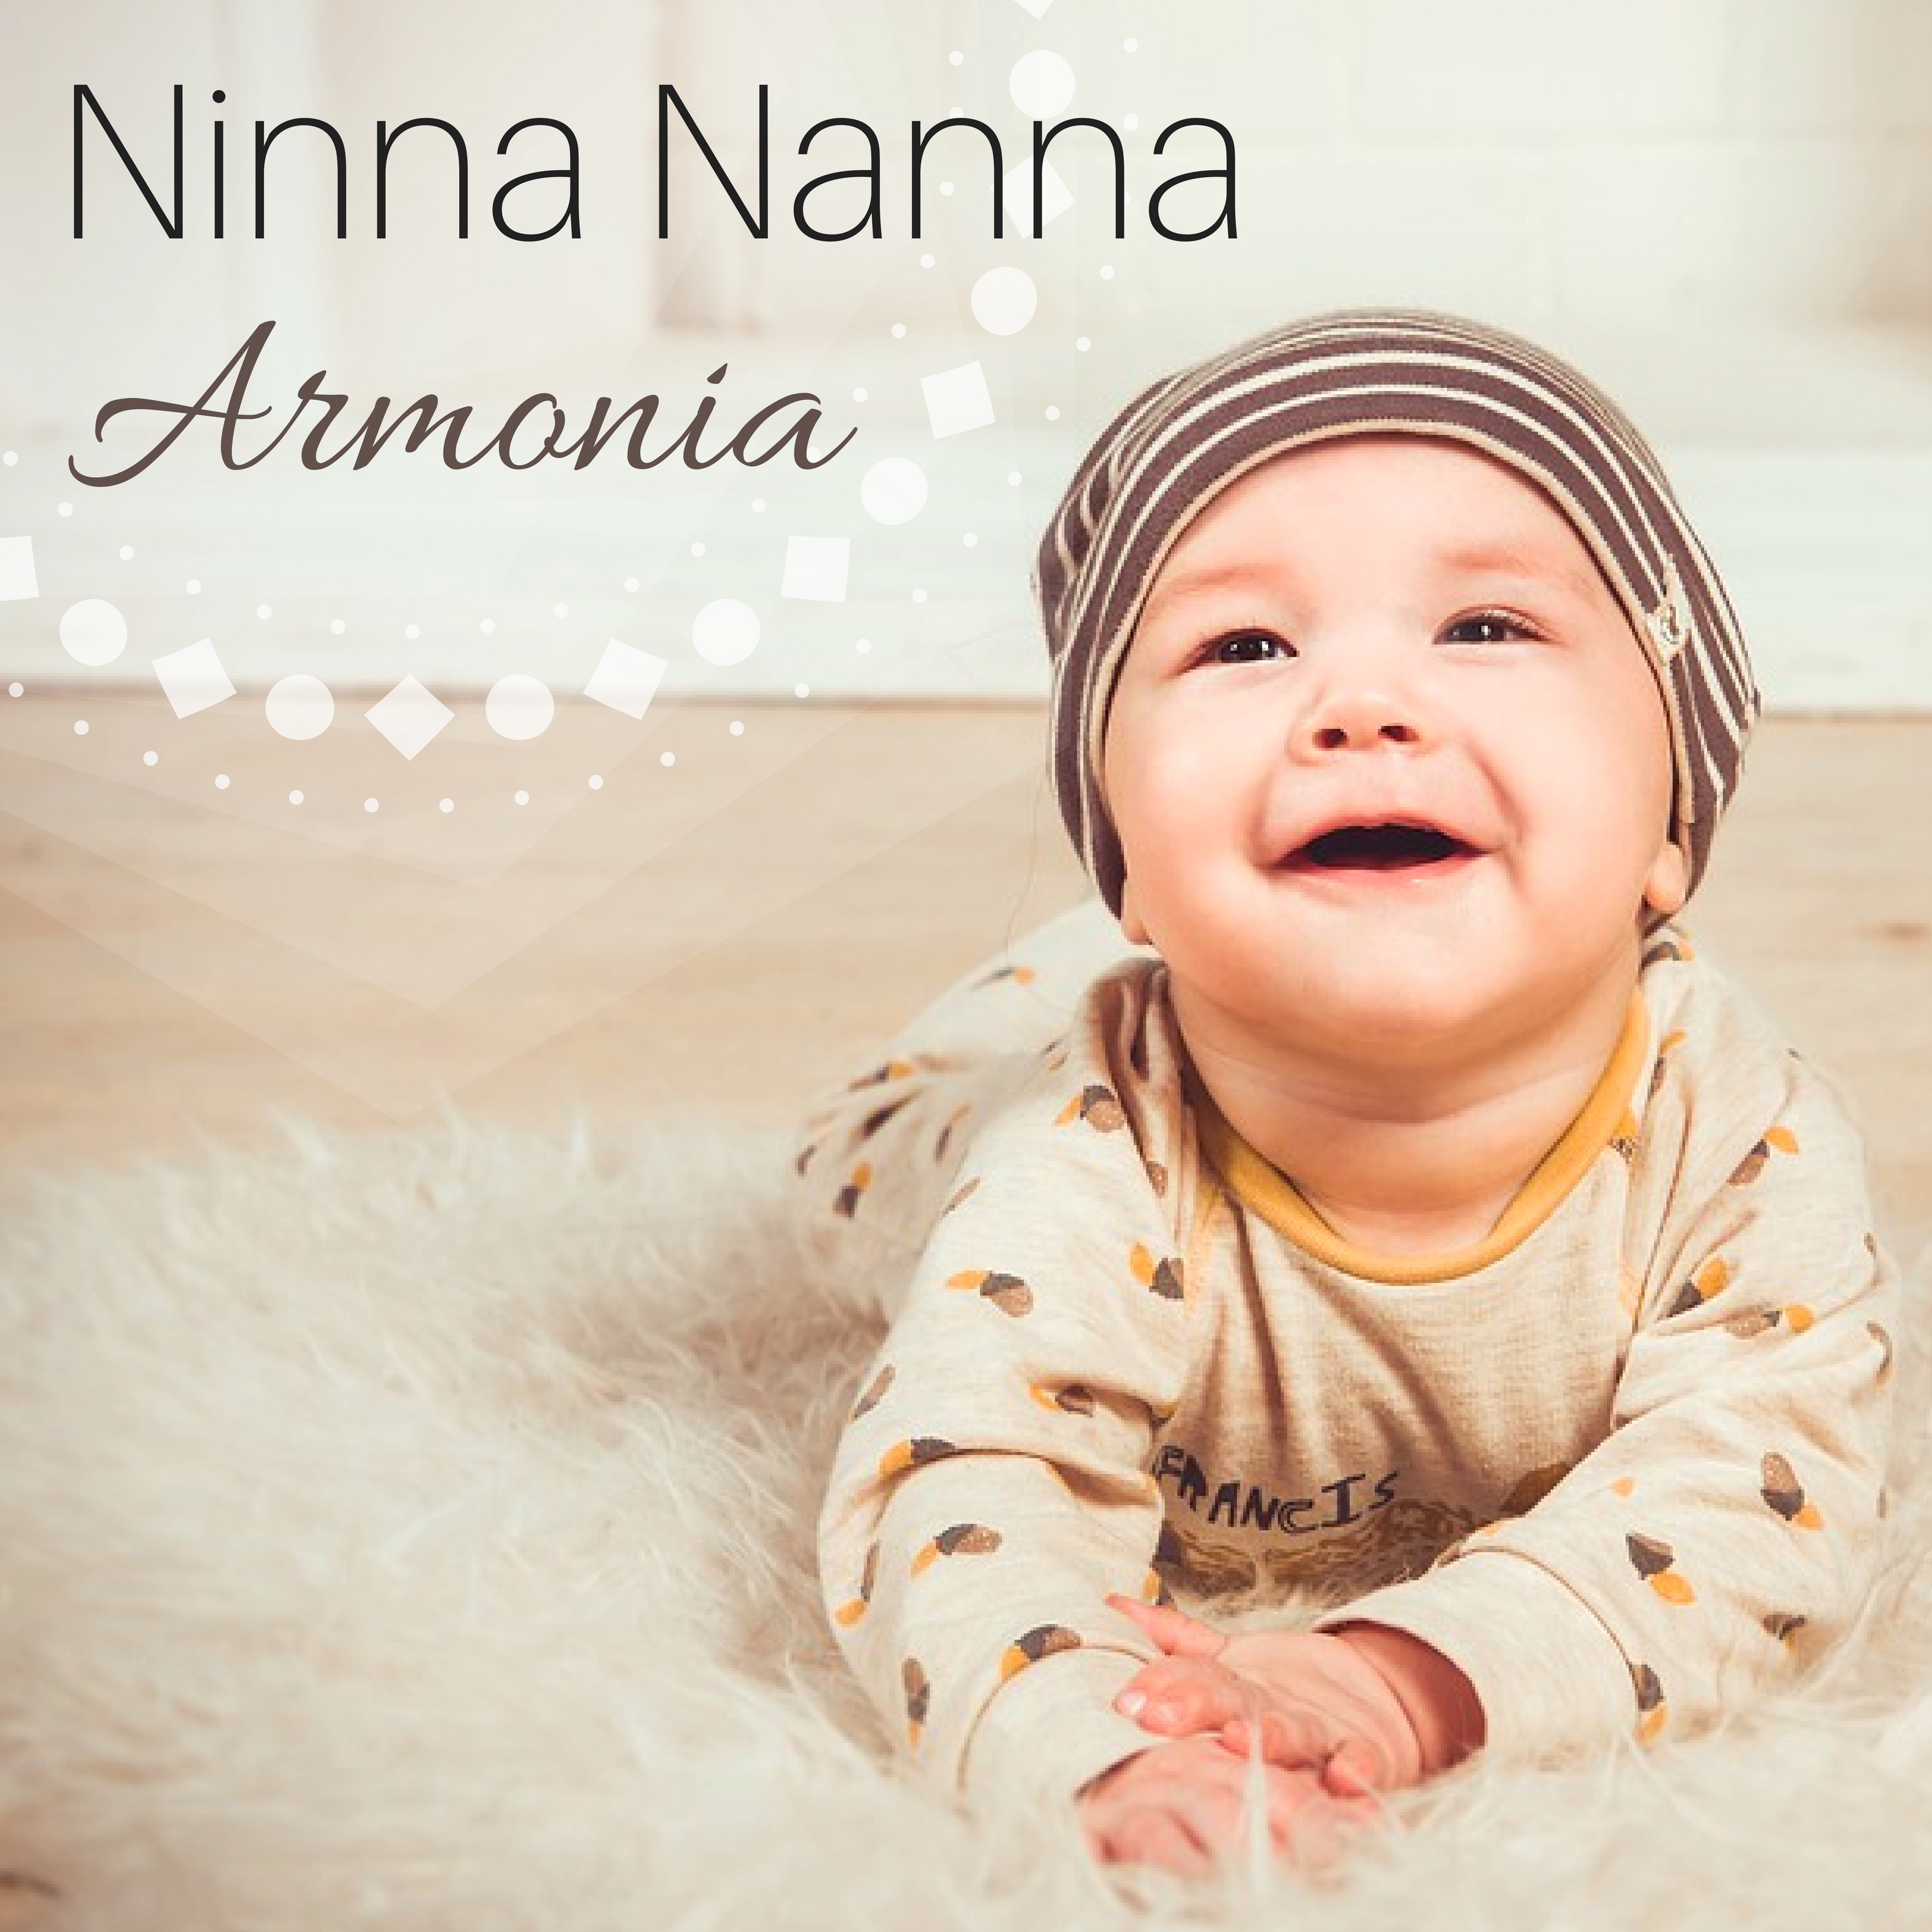 Ninna Nanna Mia